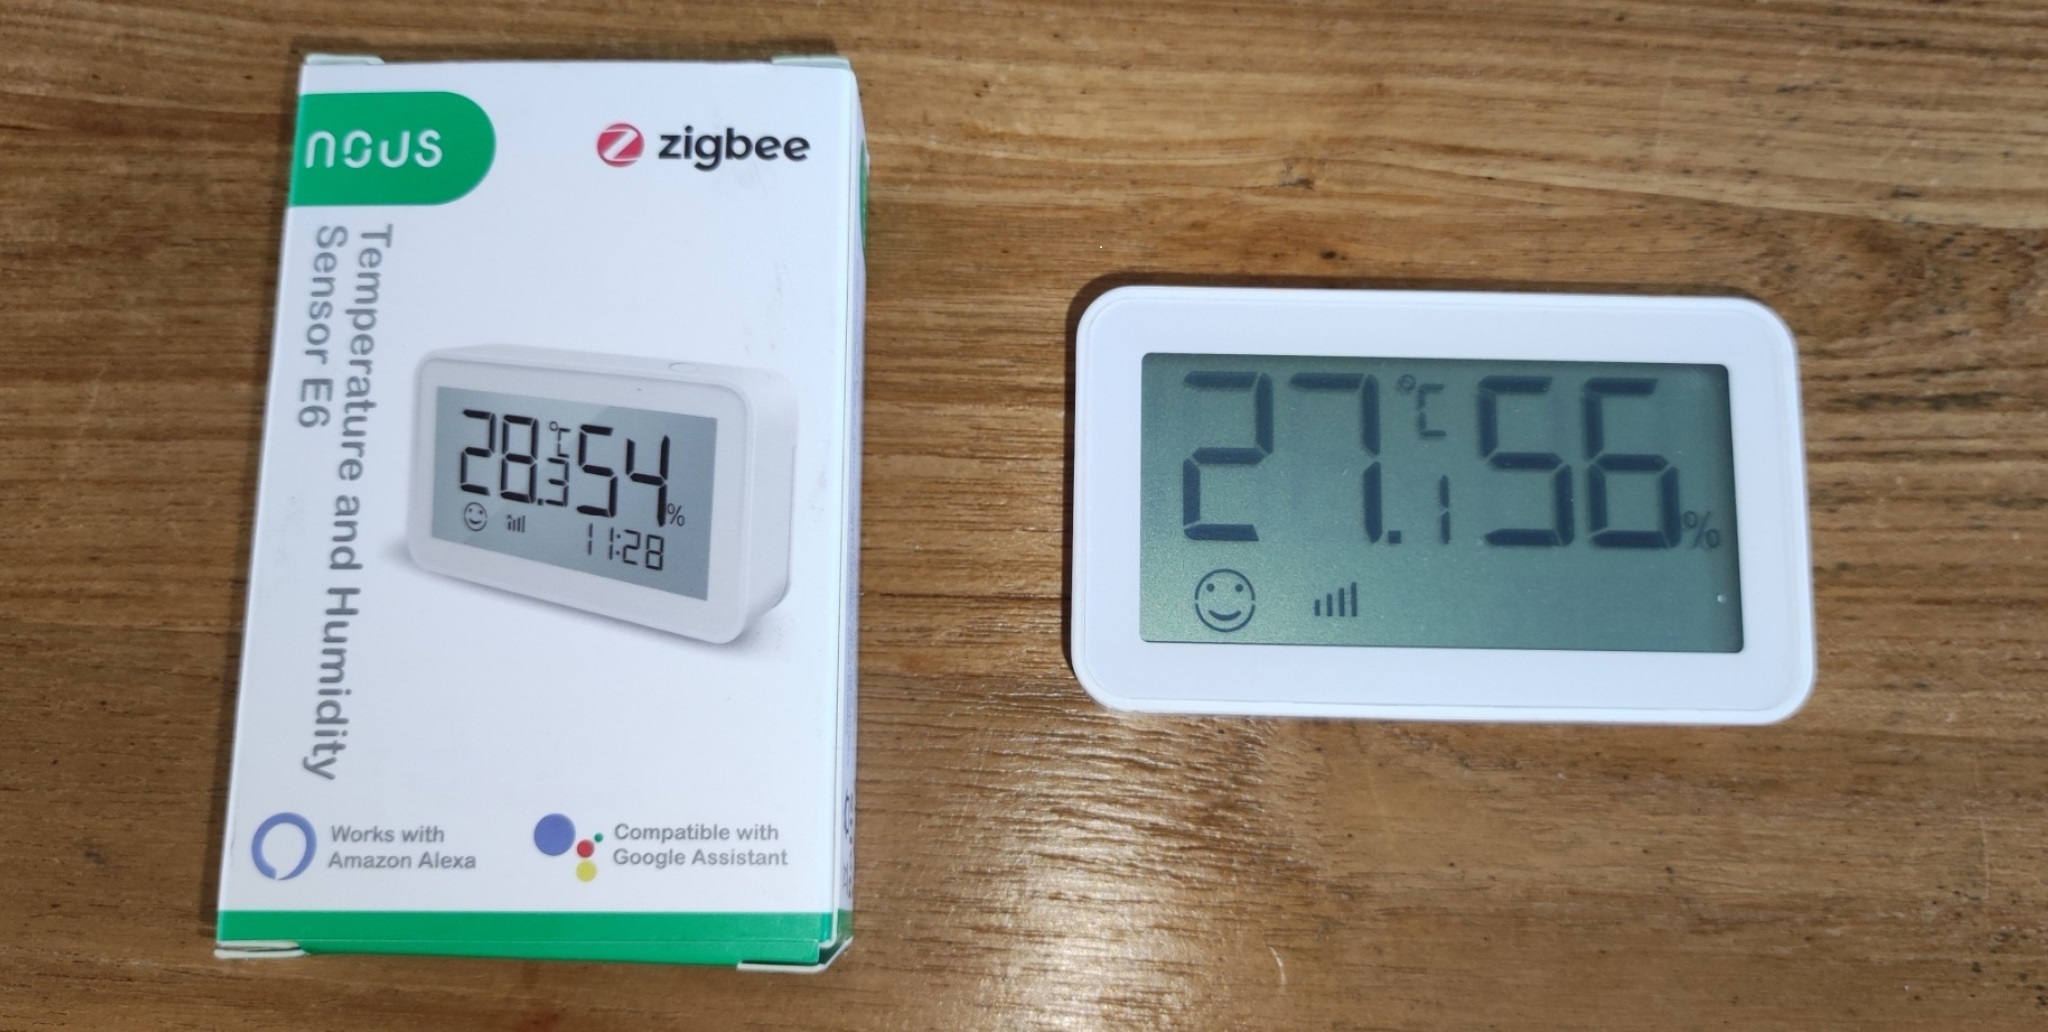 NOUS E6 Capteur de température, hygromètre Thermomètre intelligent